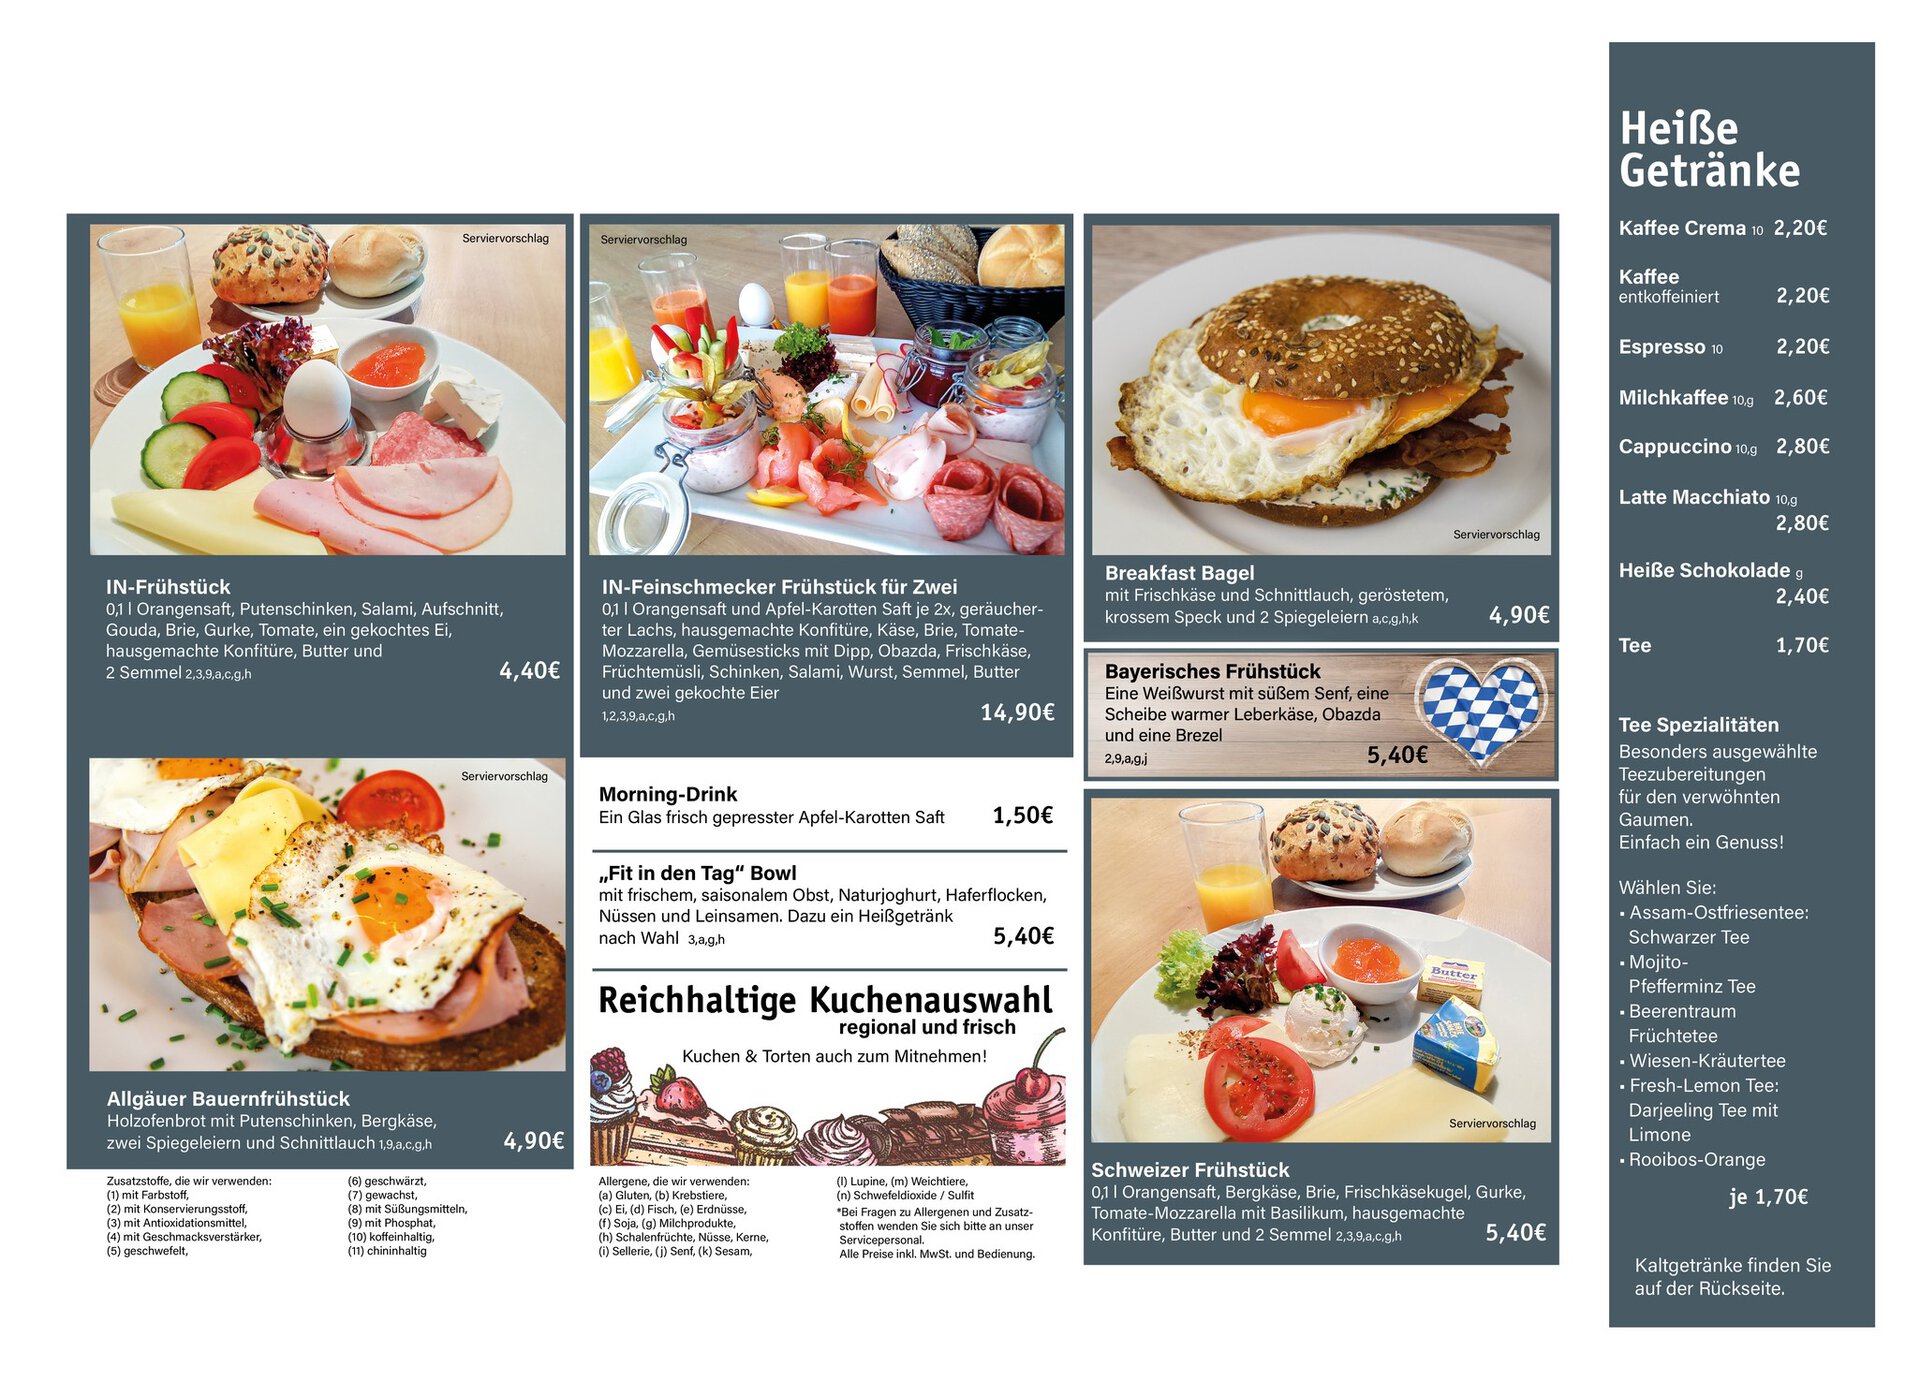 Gemütlich Frühstücken im Culinarium bei Möbel Inhofer. Aktuelle Frühstückskarte im Bedienrestaurant